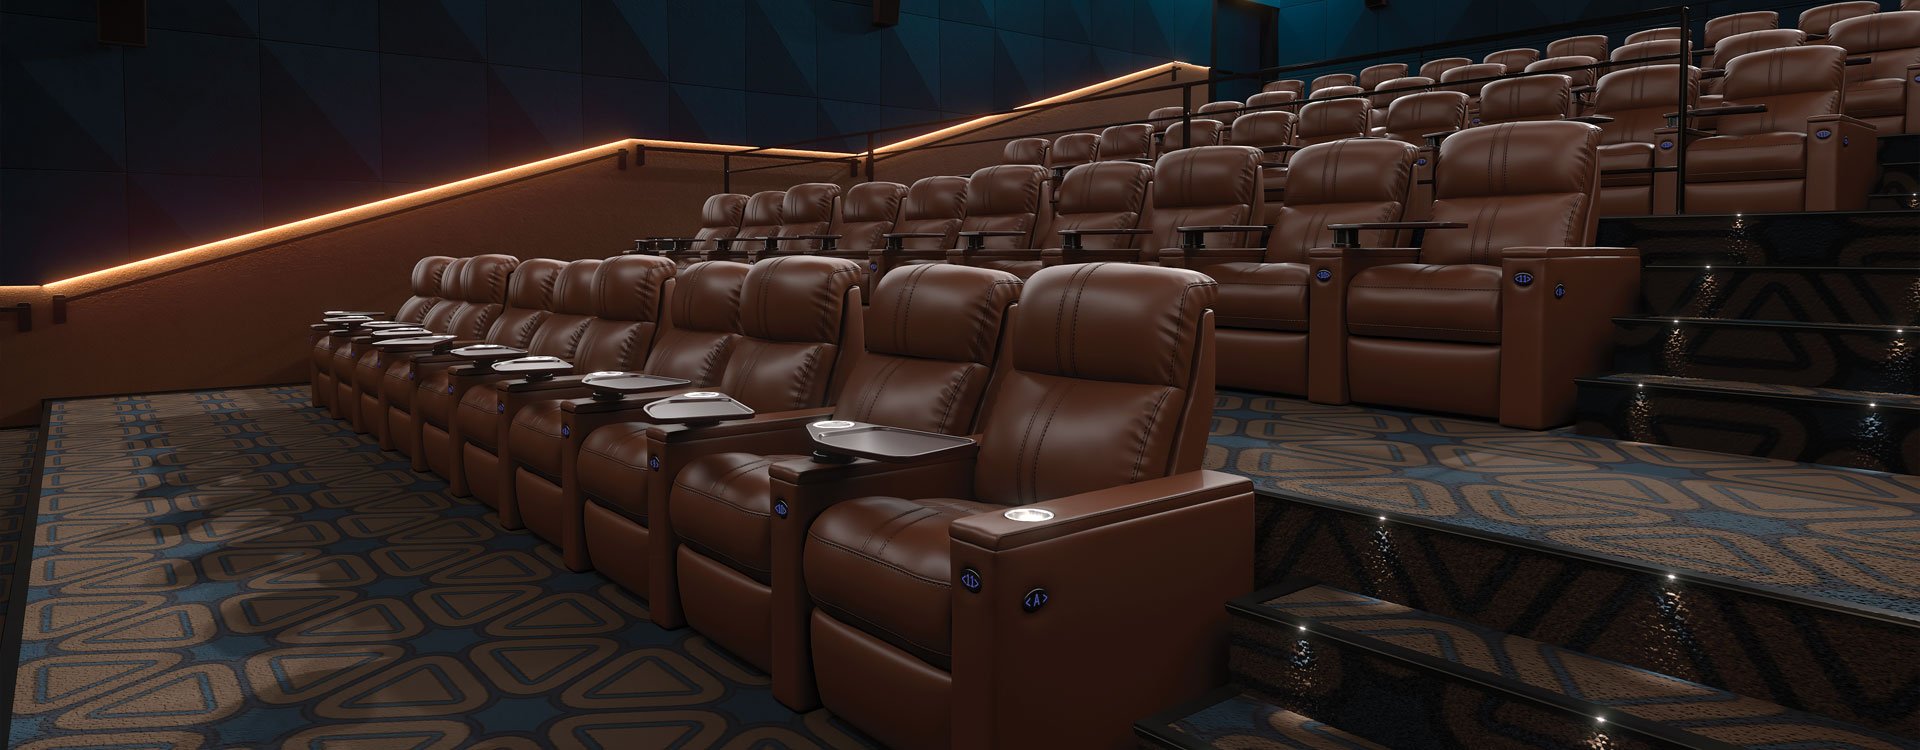 VIP Cinema Seats